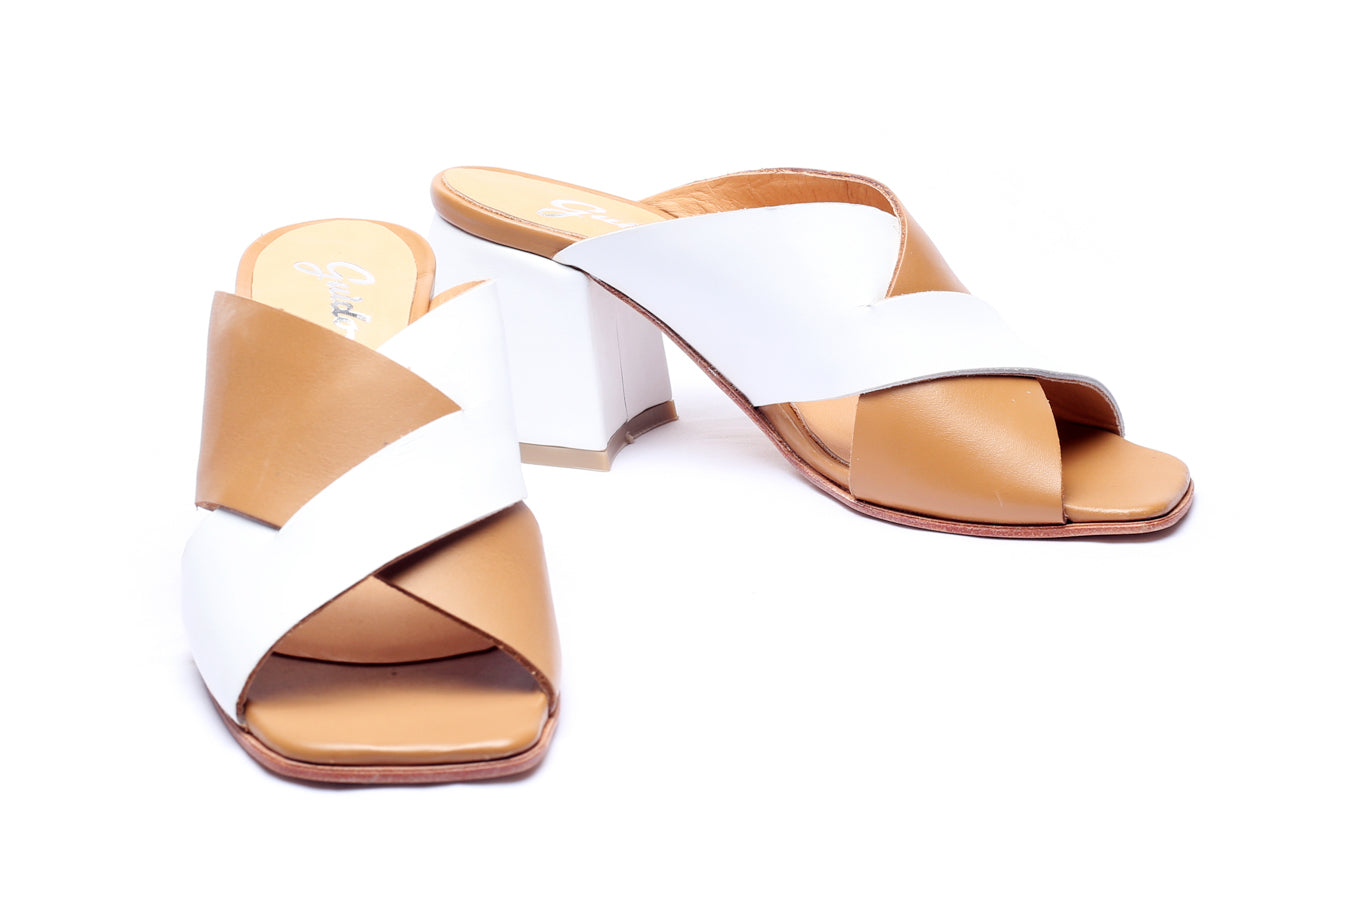 Sandal Rimini Tan & White